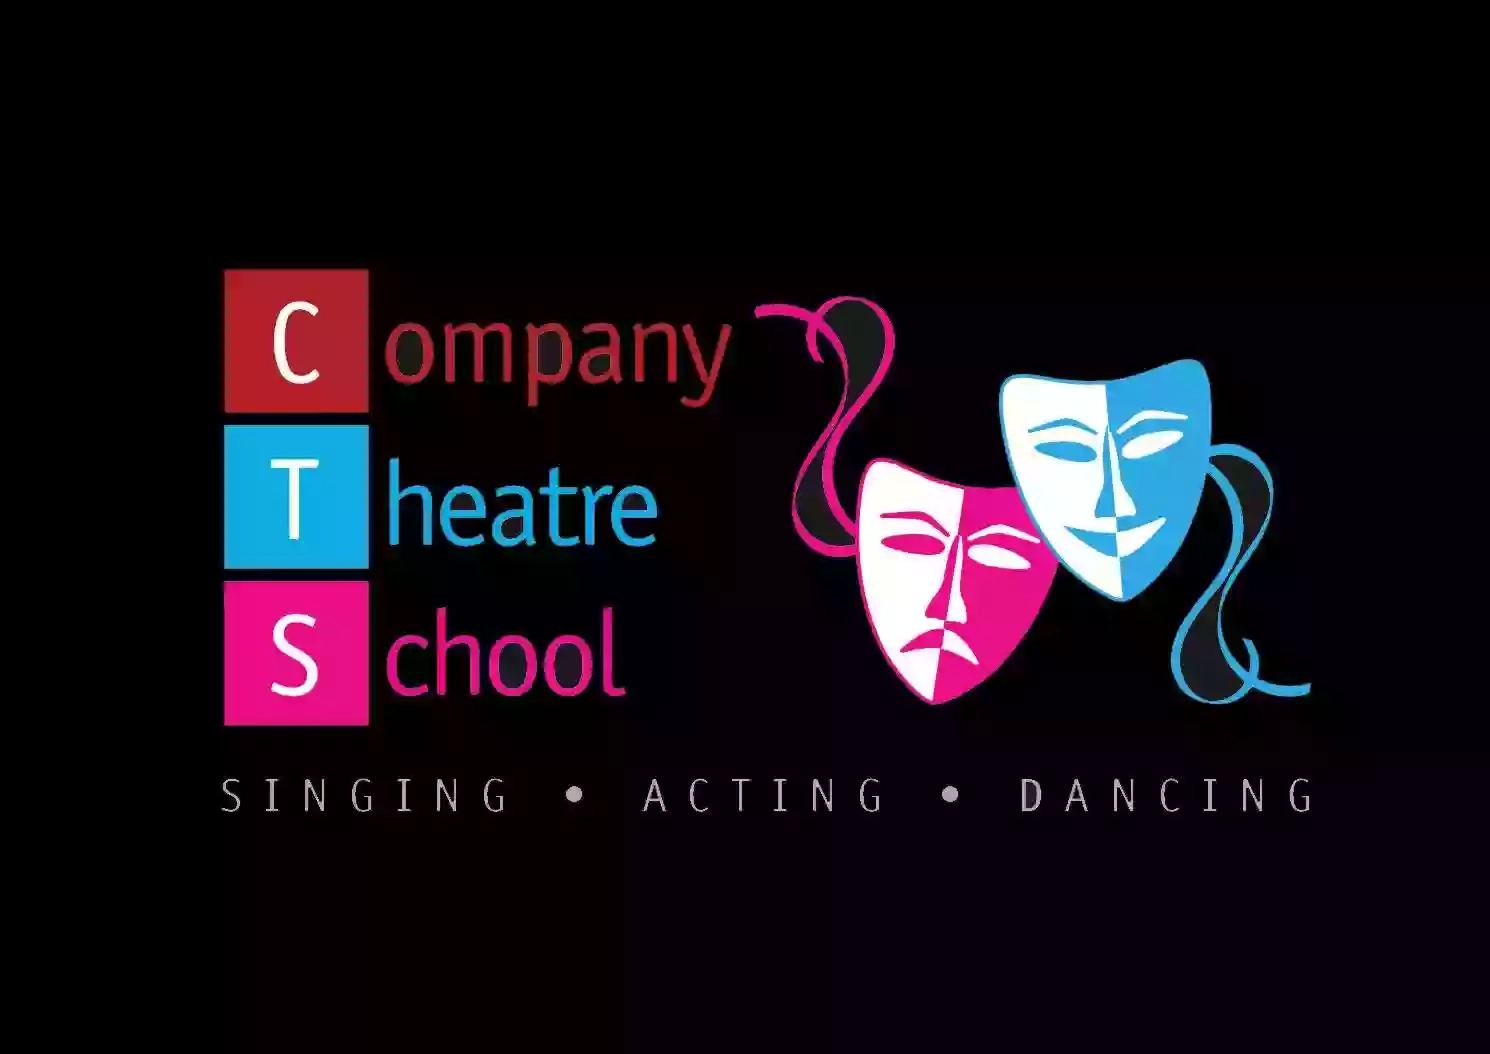 Company Theatre School